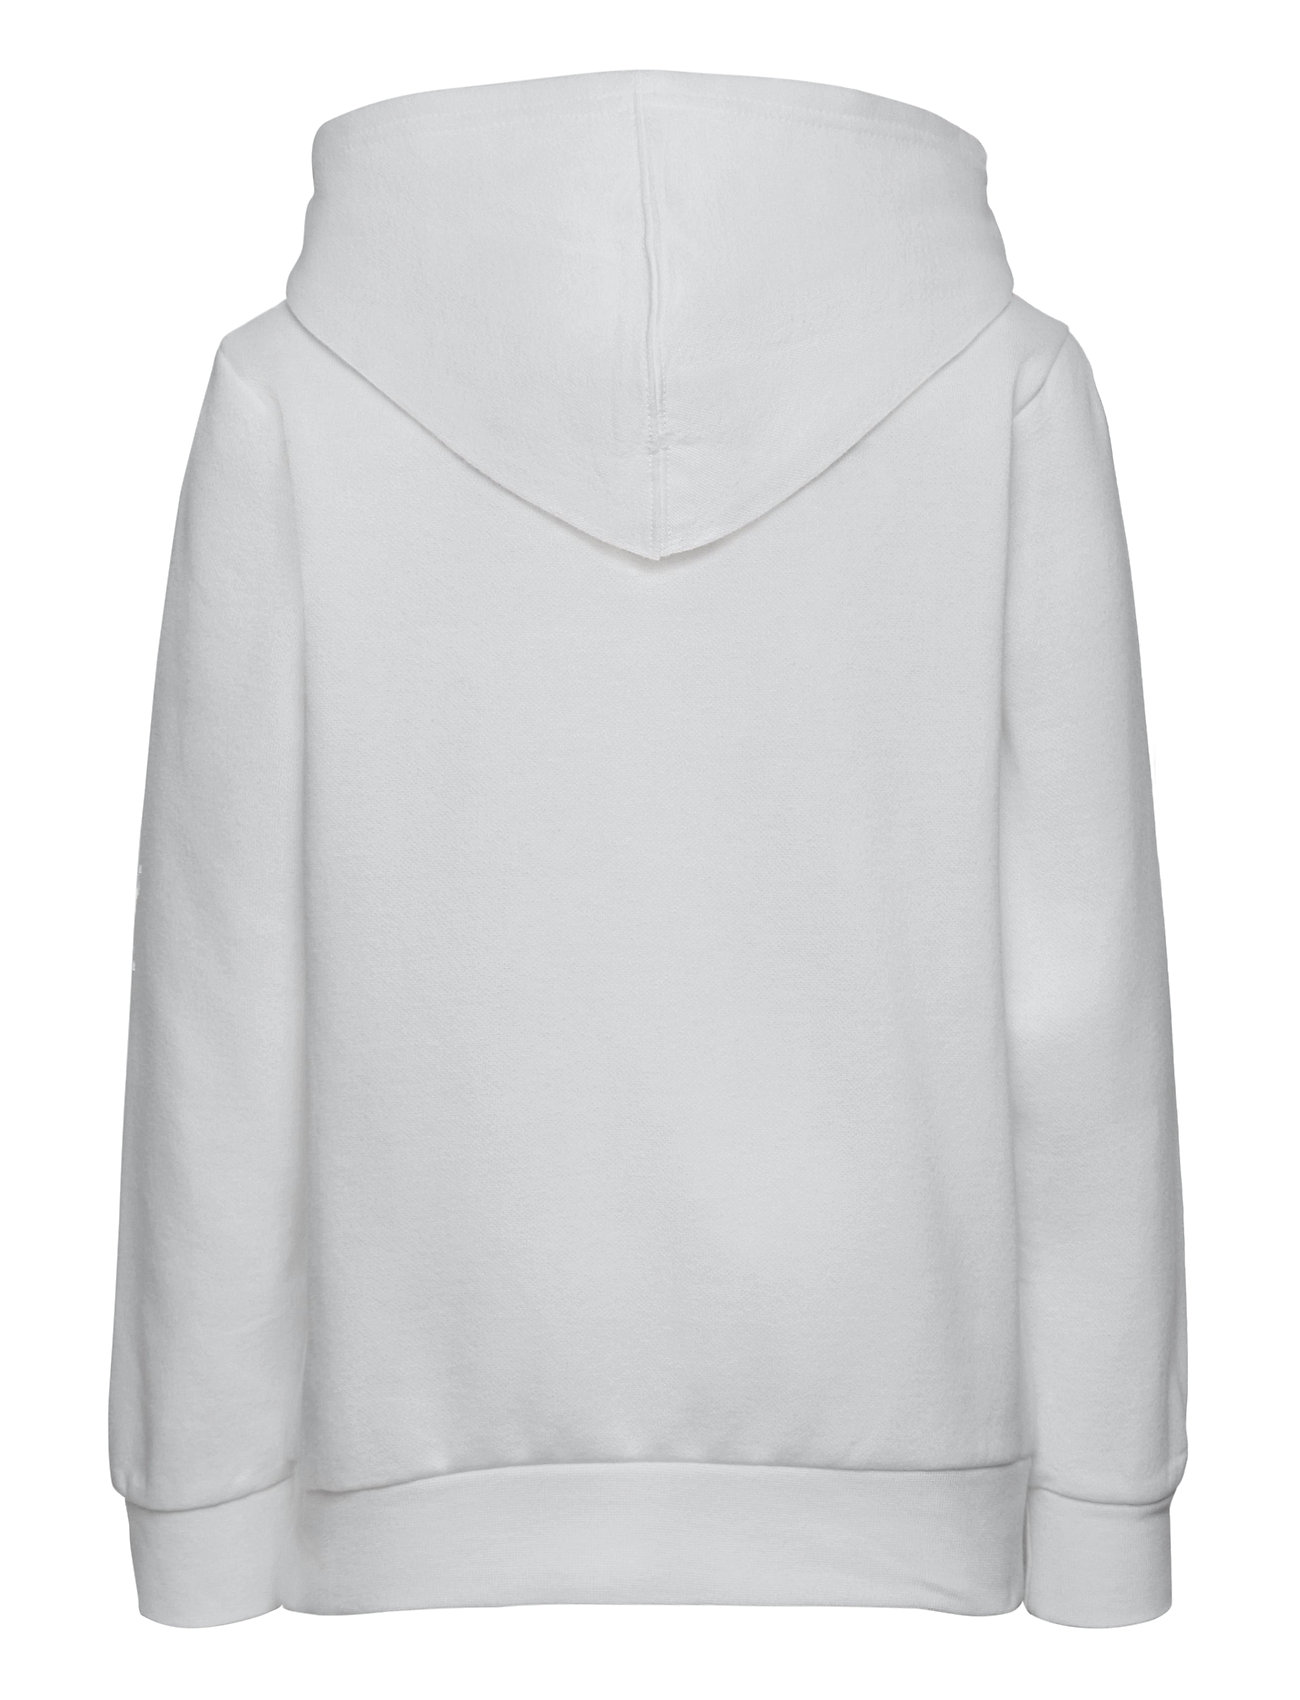 Sort Hooded Sweatshirt Hoodie Trøje Hvid Champion hoodies for børn - Pashion.dk